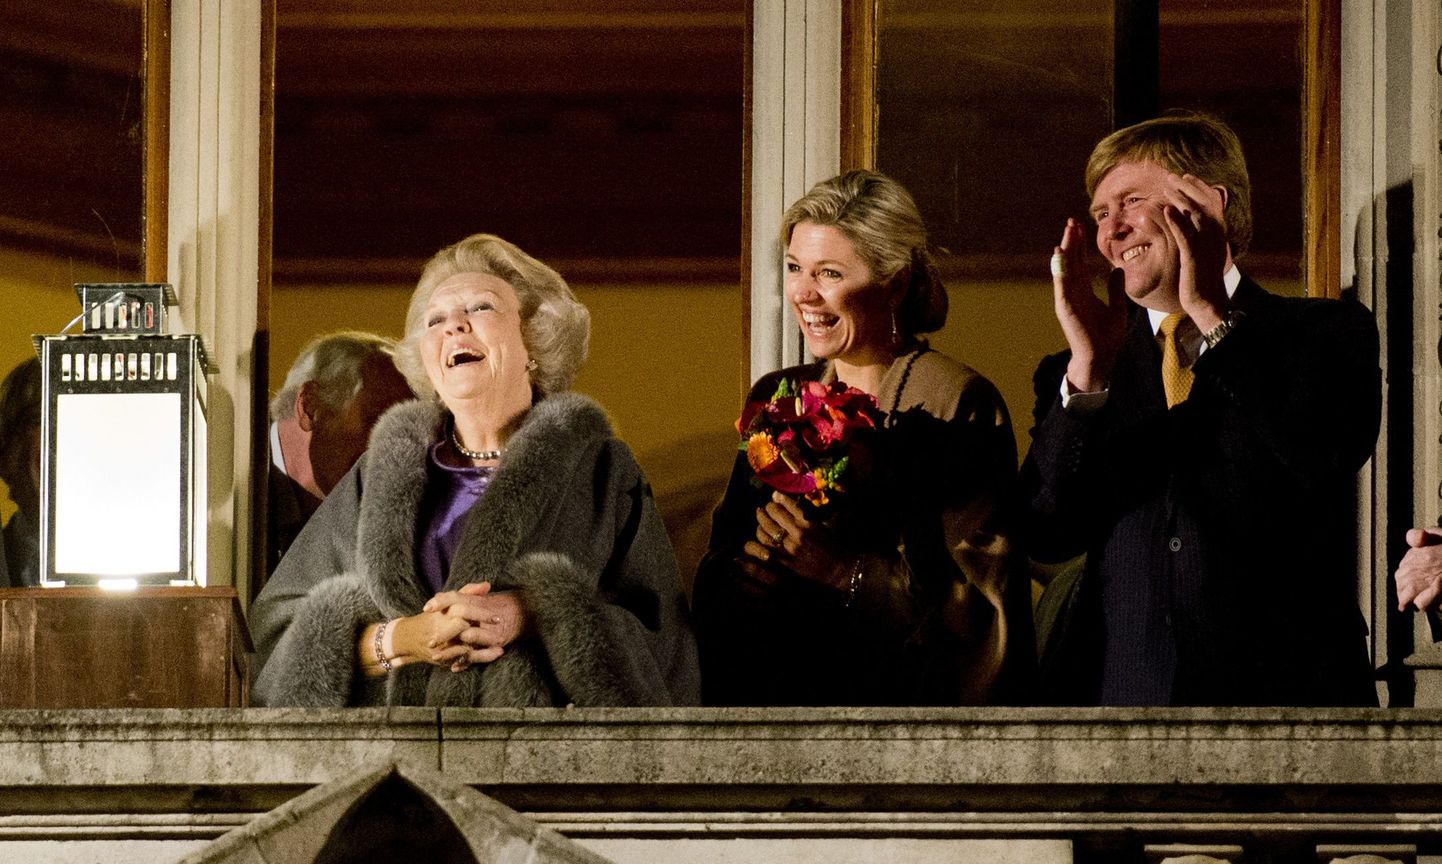 Hollandi kuninganna Beatrix, prints Willem-Alexander and printsess Maxima möödunud nädalal Utrechti rahulepingu 300. aastapäeval.